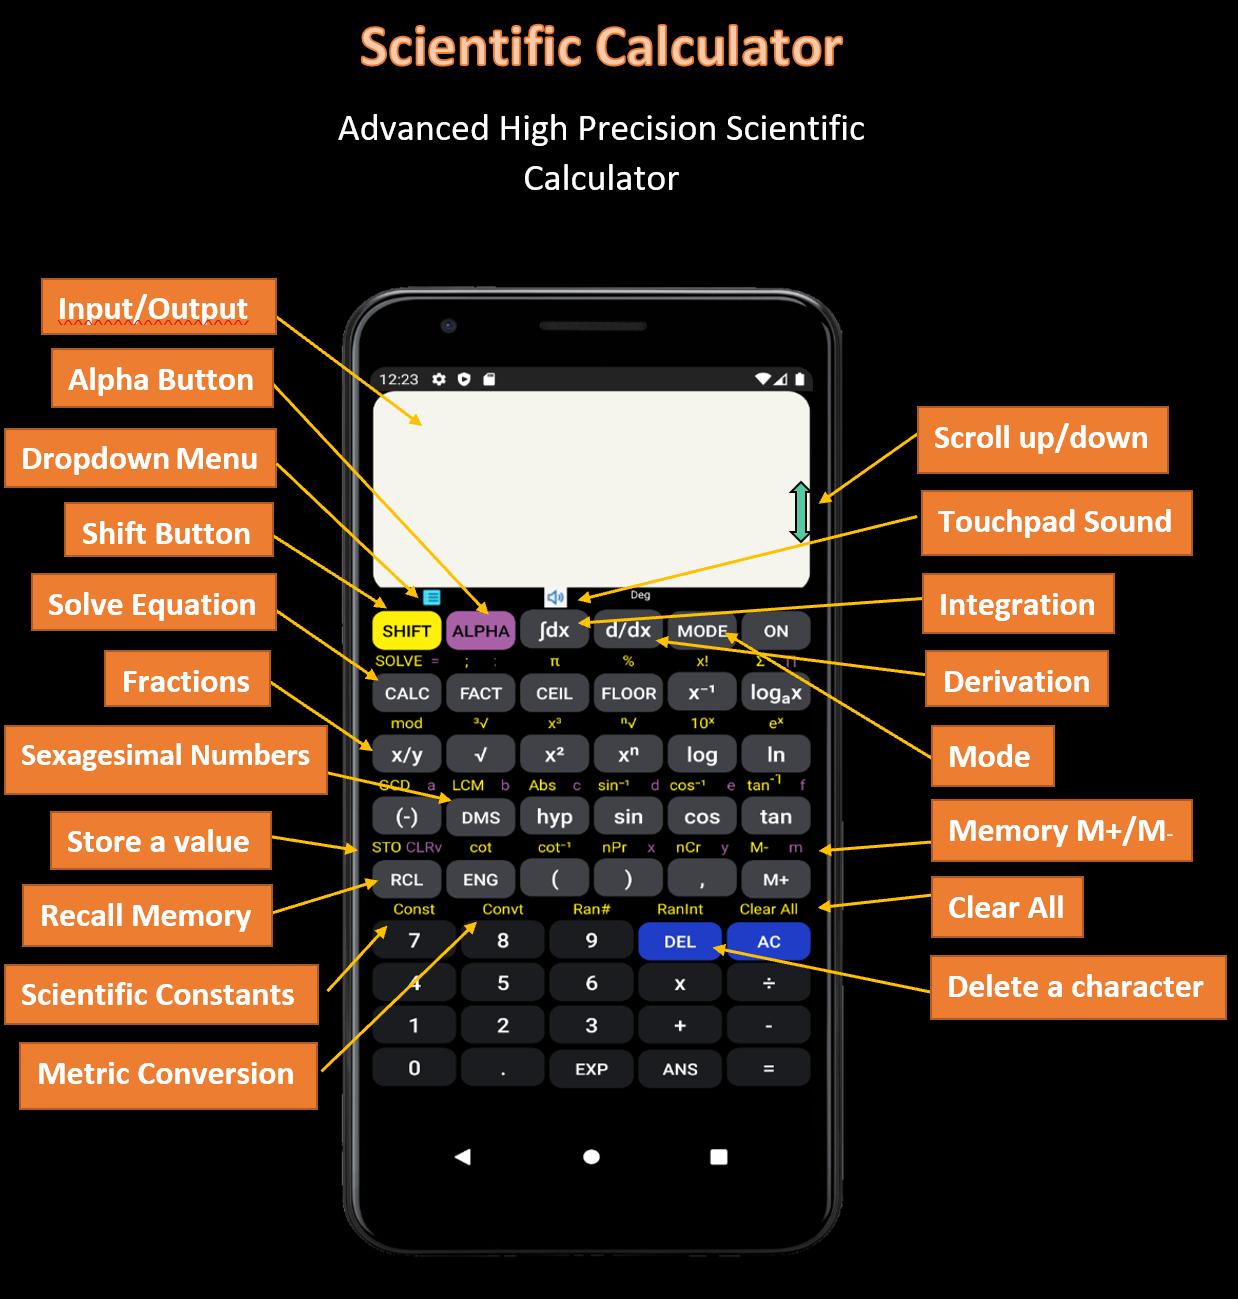 Descarga de APK de AiCalc Scientific Calculator para Android